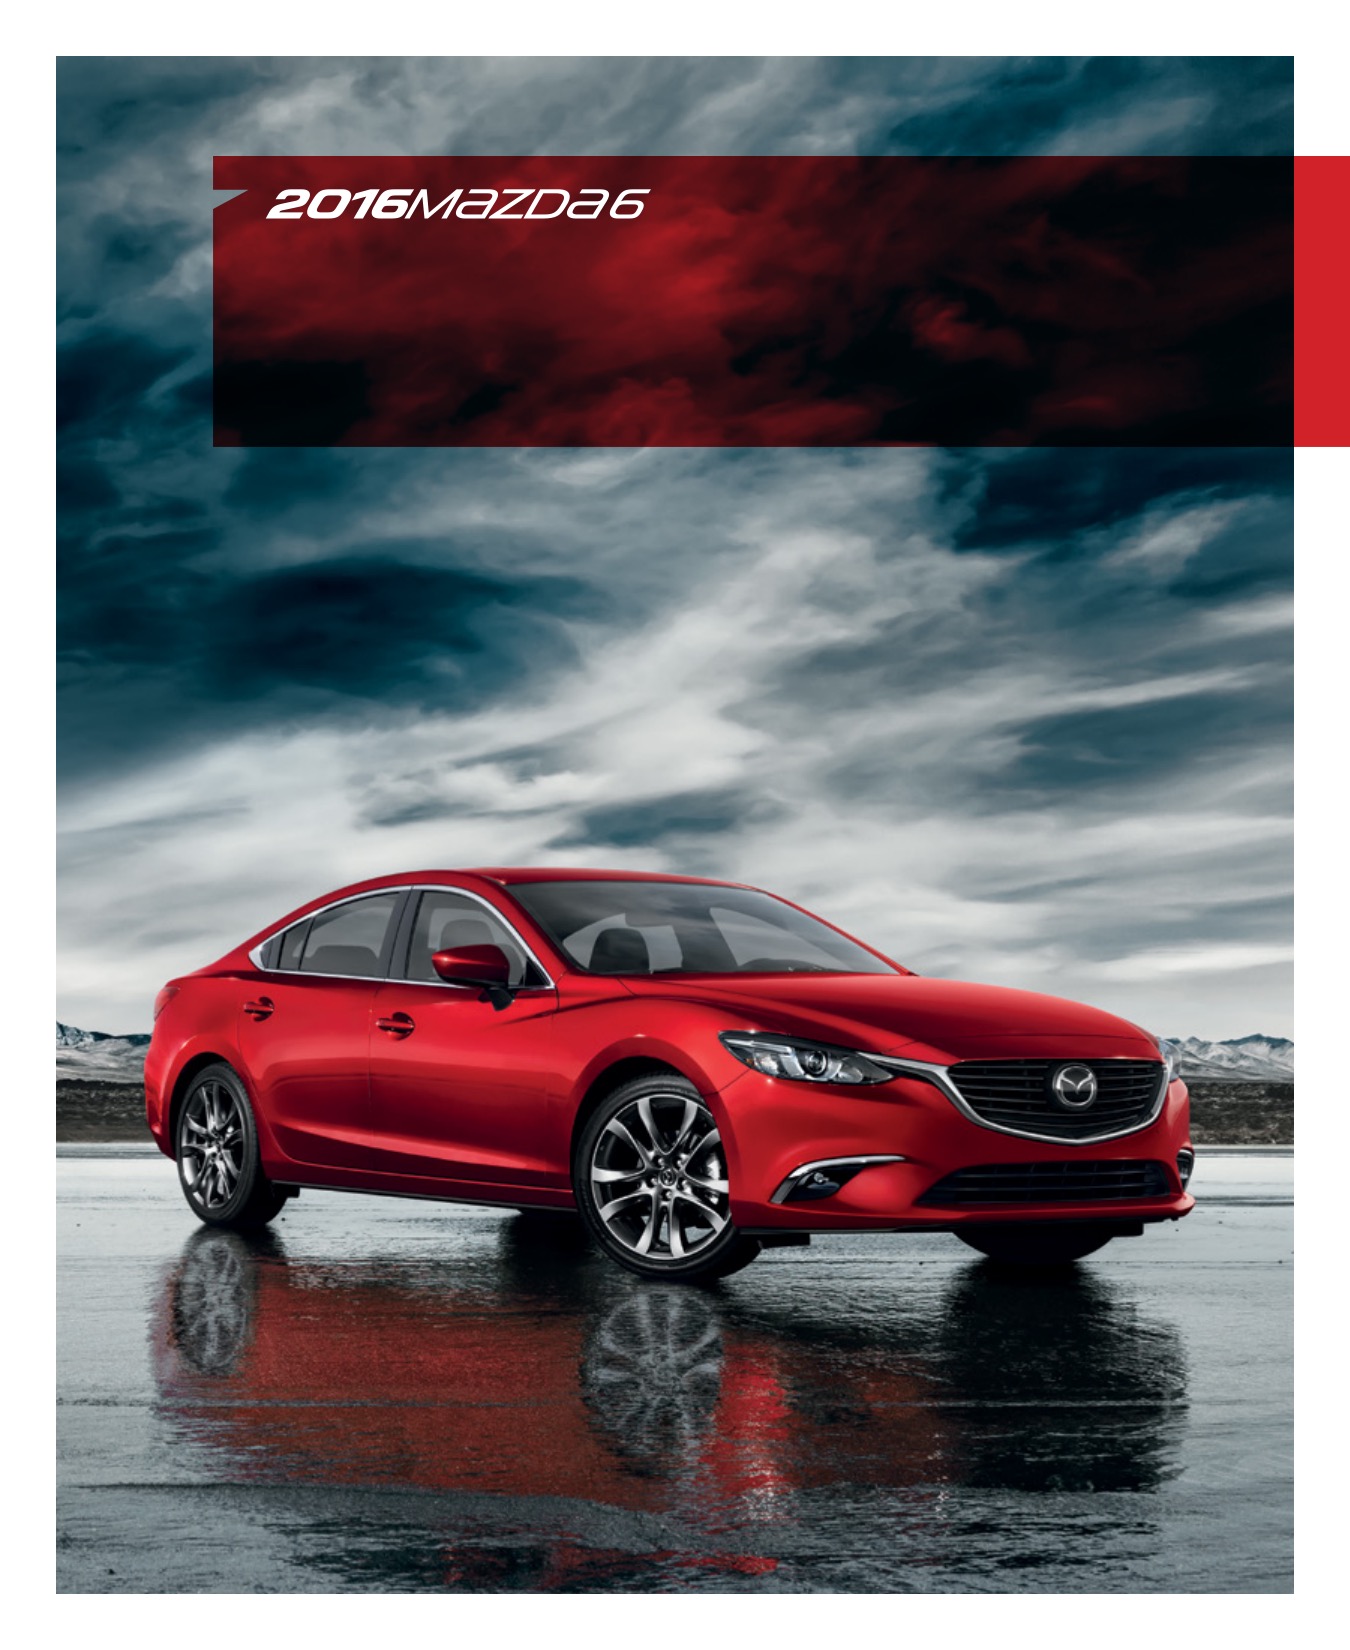 2016 Mazda 6 Brochure